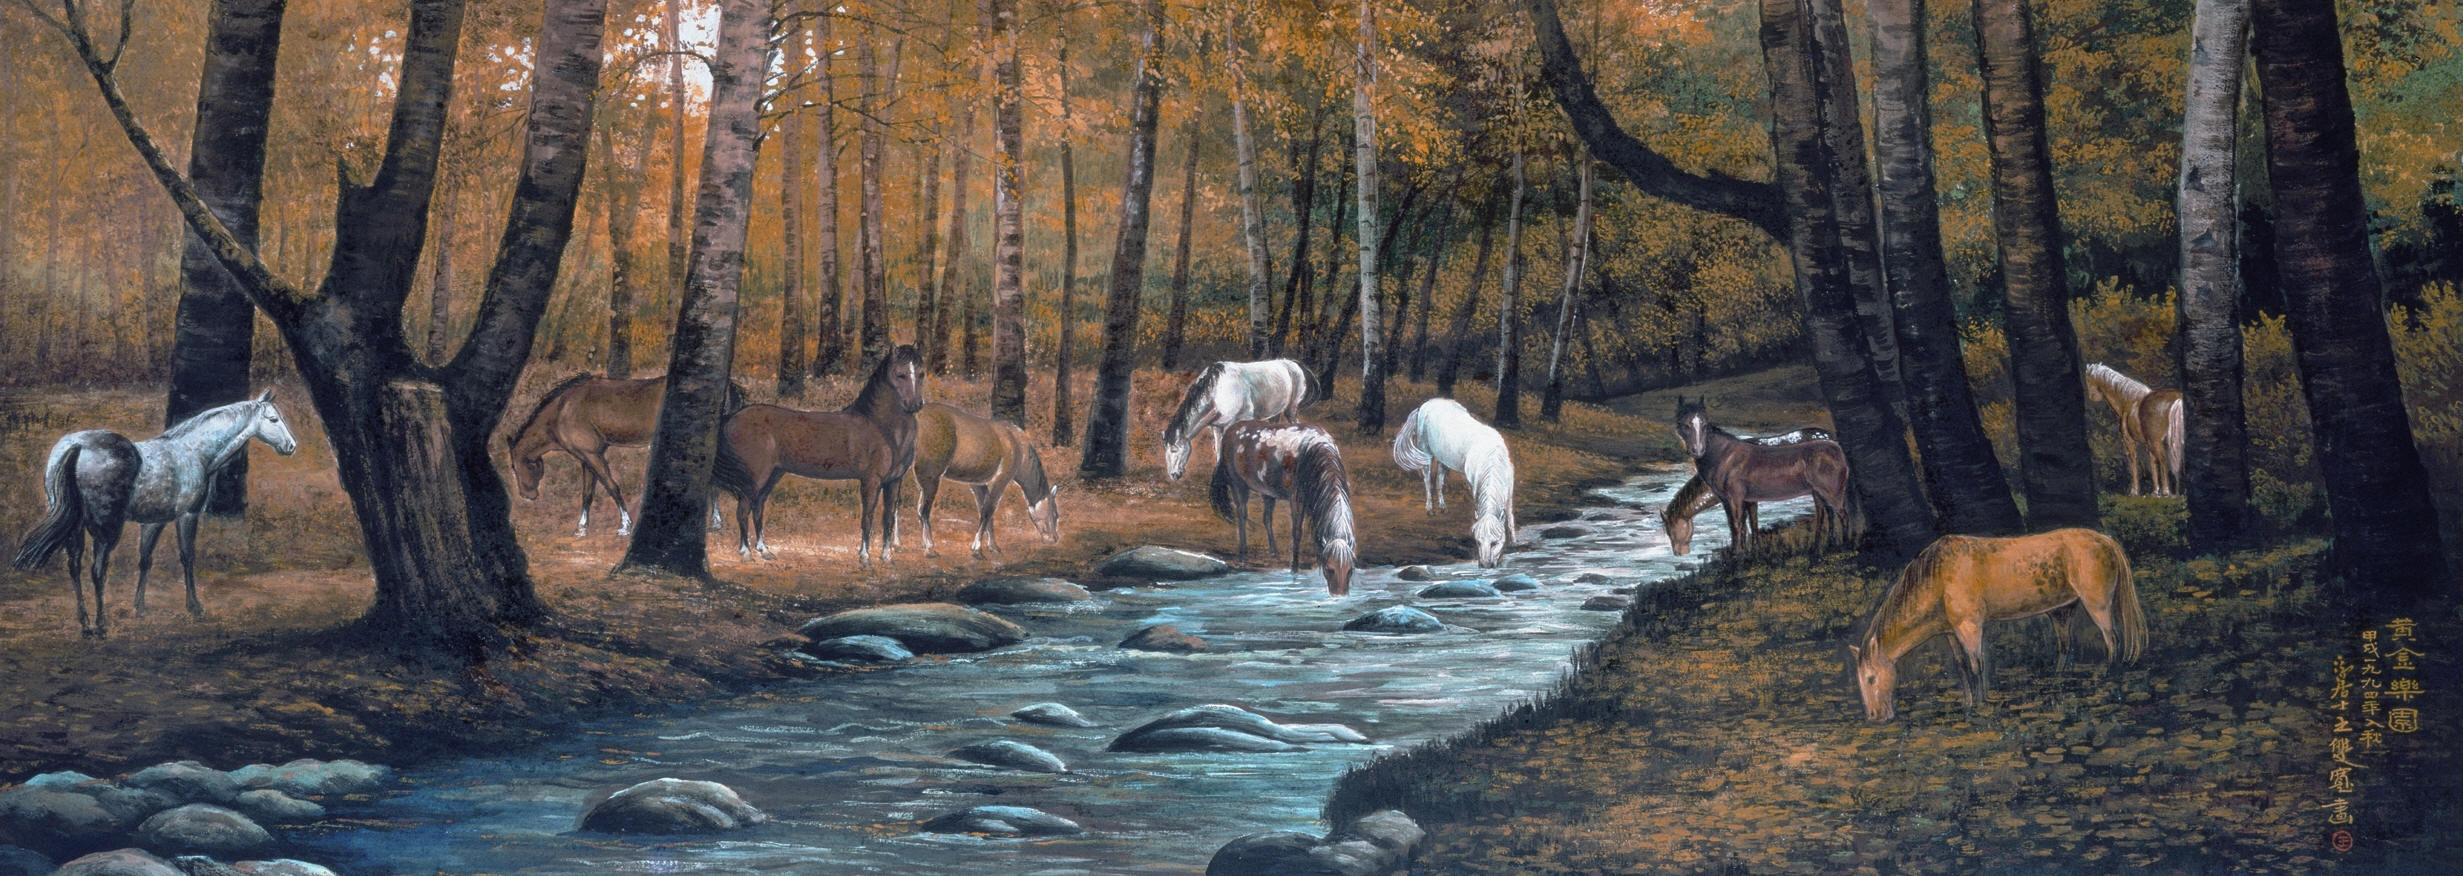 Gathering Horses Mural PR1450